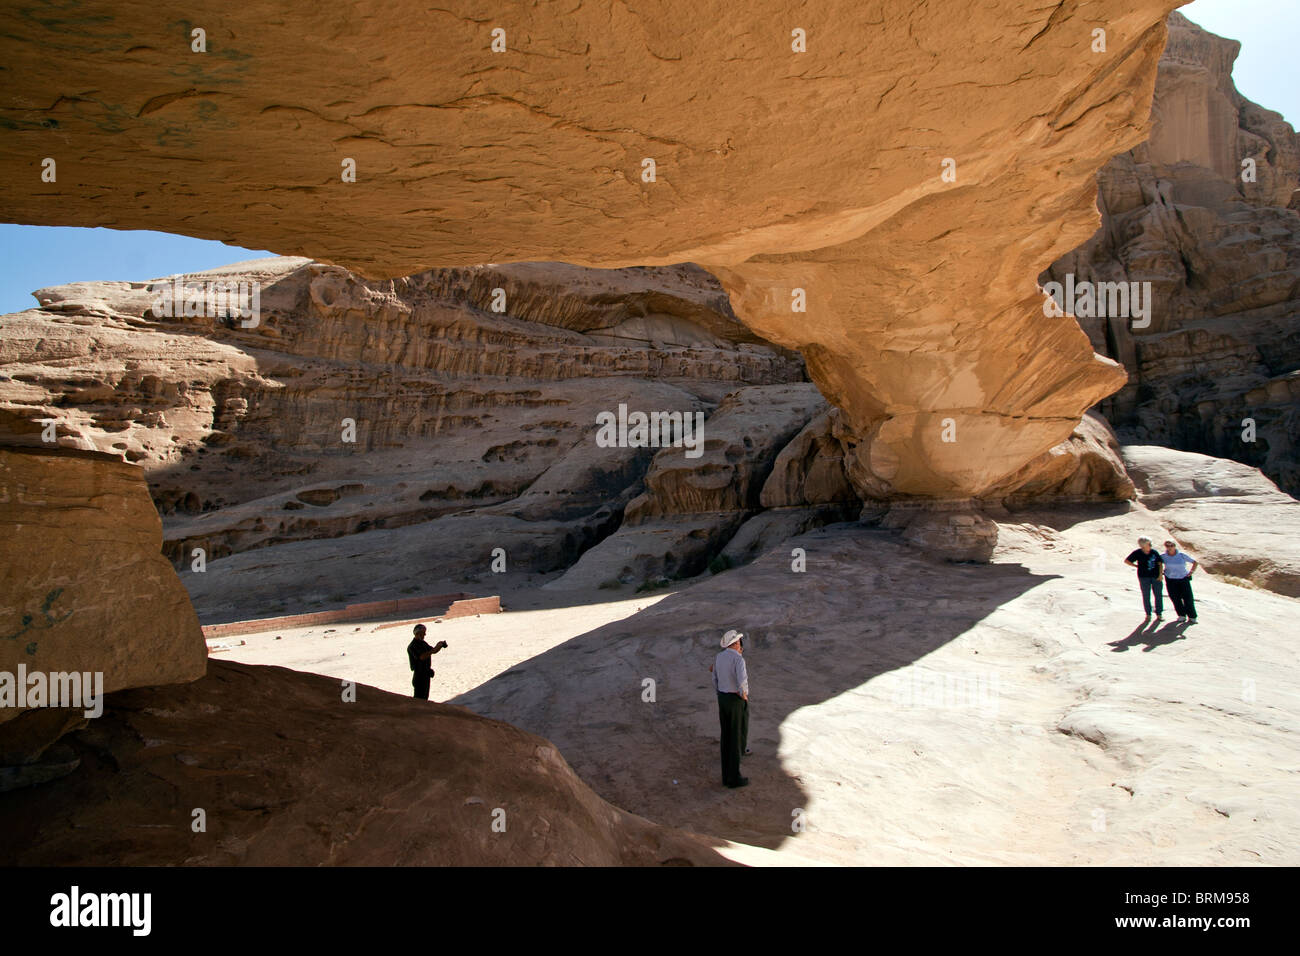 Natural Rock Bridge, Wadi Rum Jordan. Stock Photo